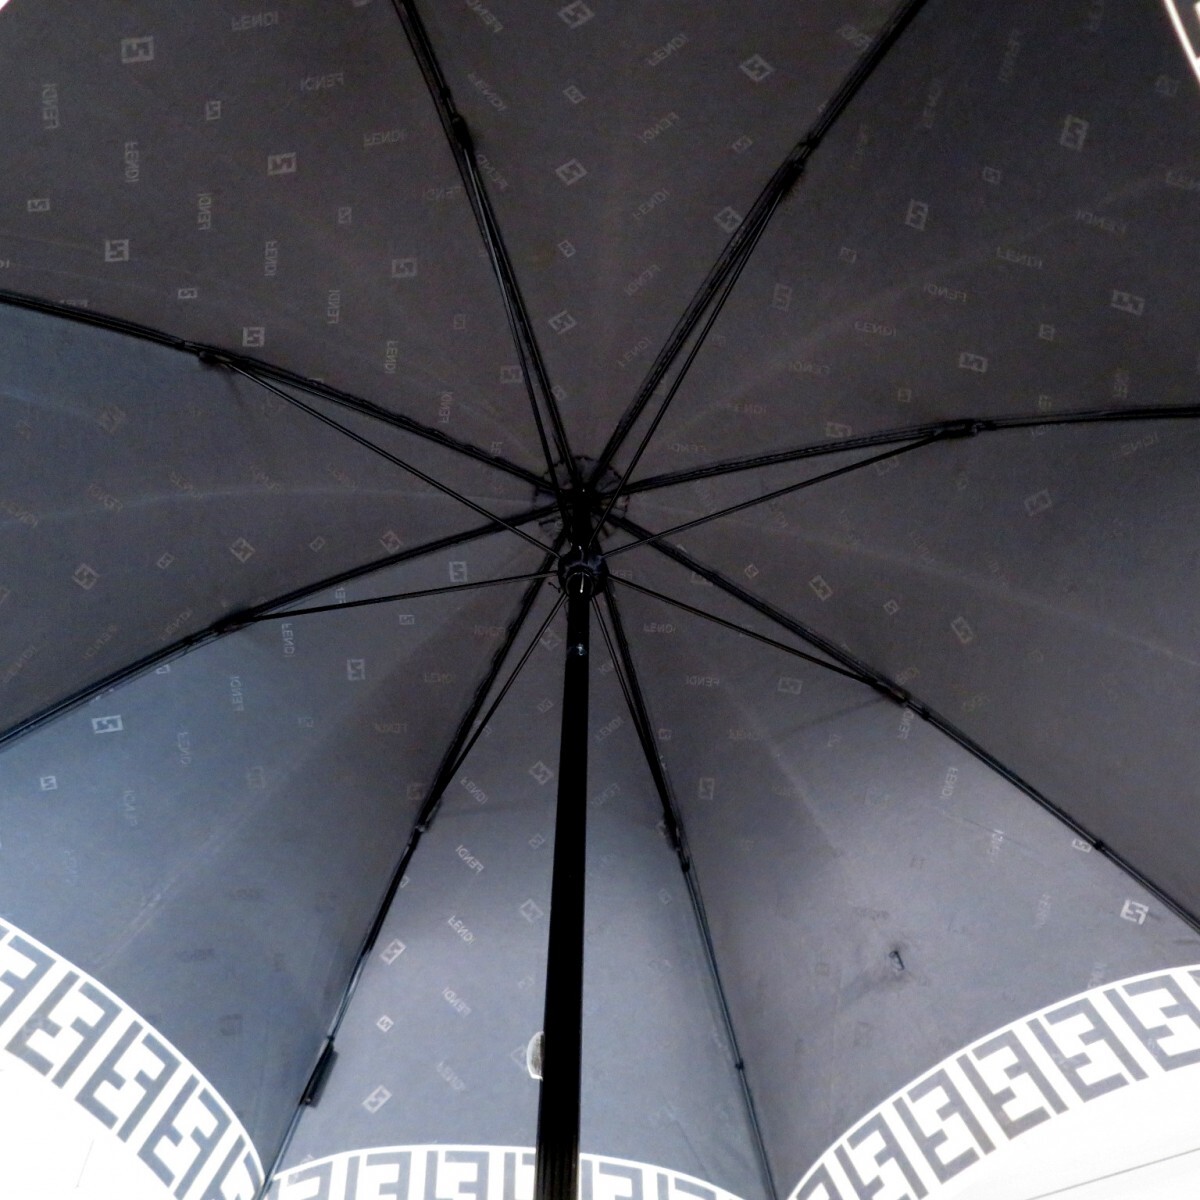  подлинный товар   FENDI ...  дождь  зонт  ... зонт  ...  черный   настоящий  гарантия  0512-062